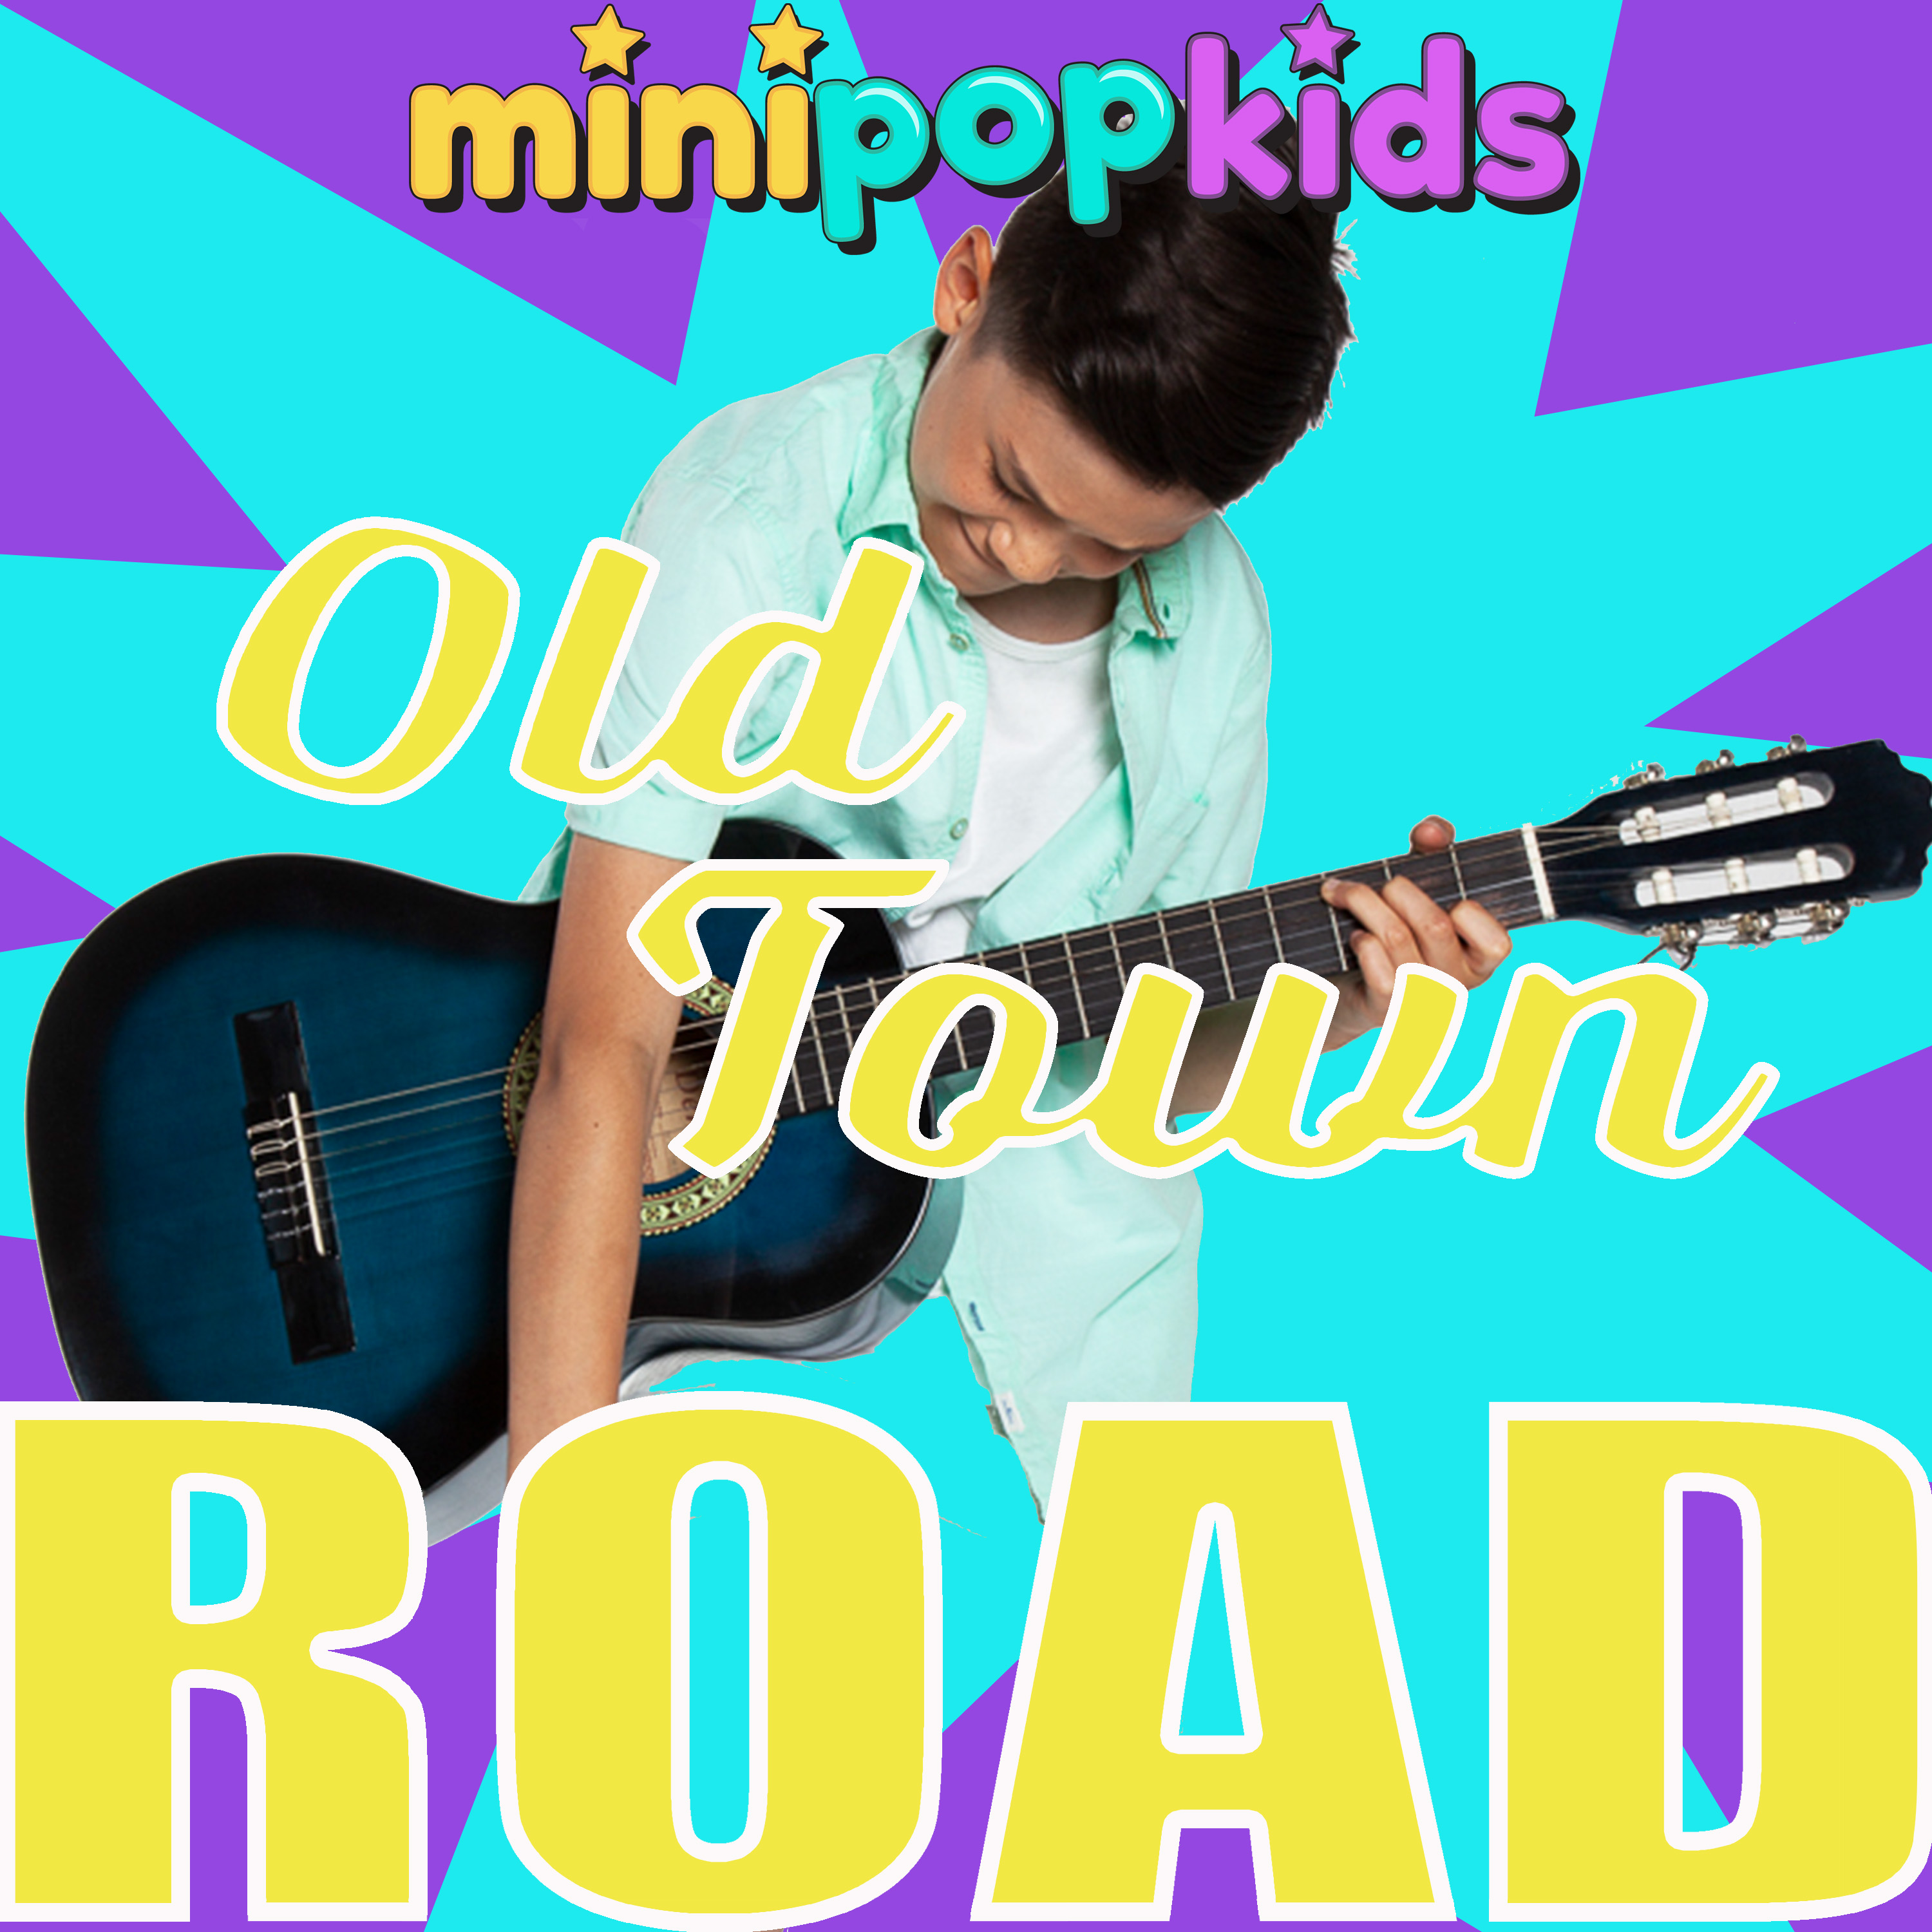 Old Town Road Mini Pop Kids